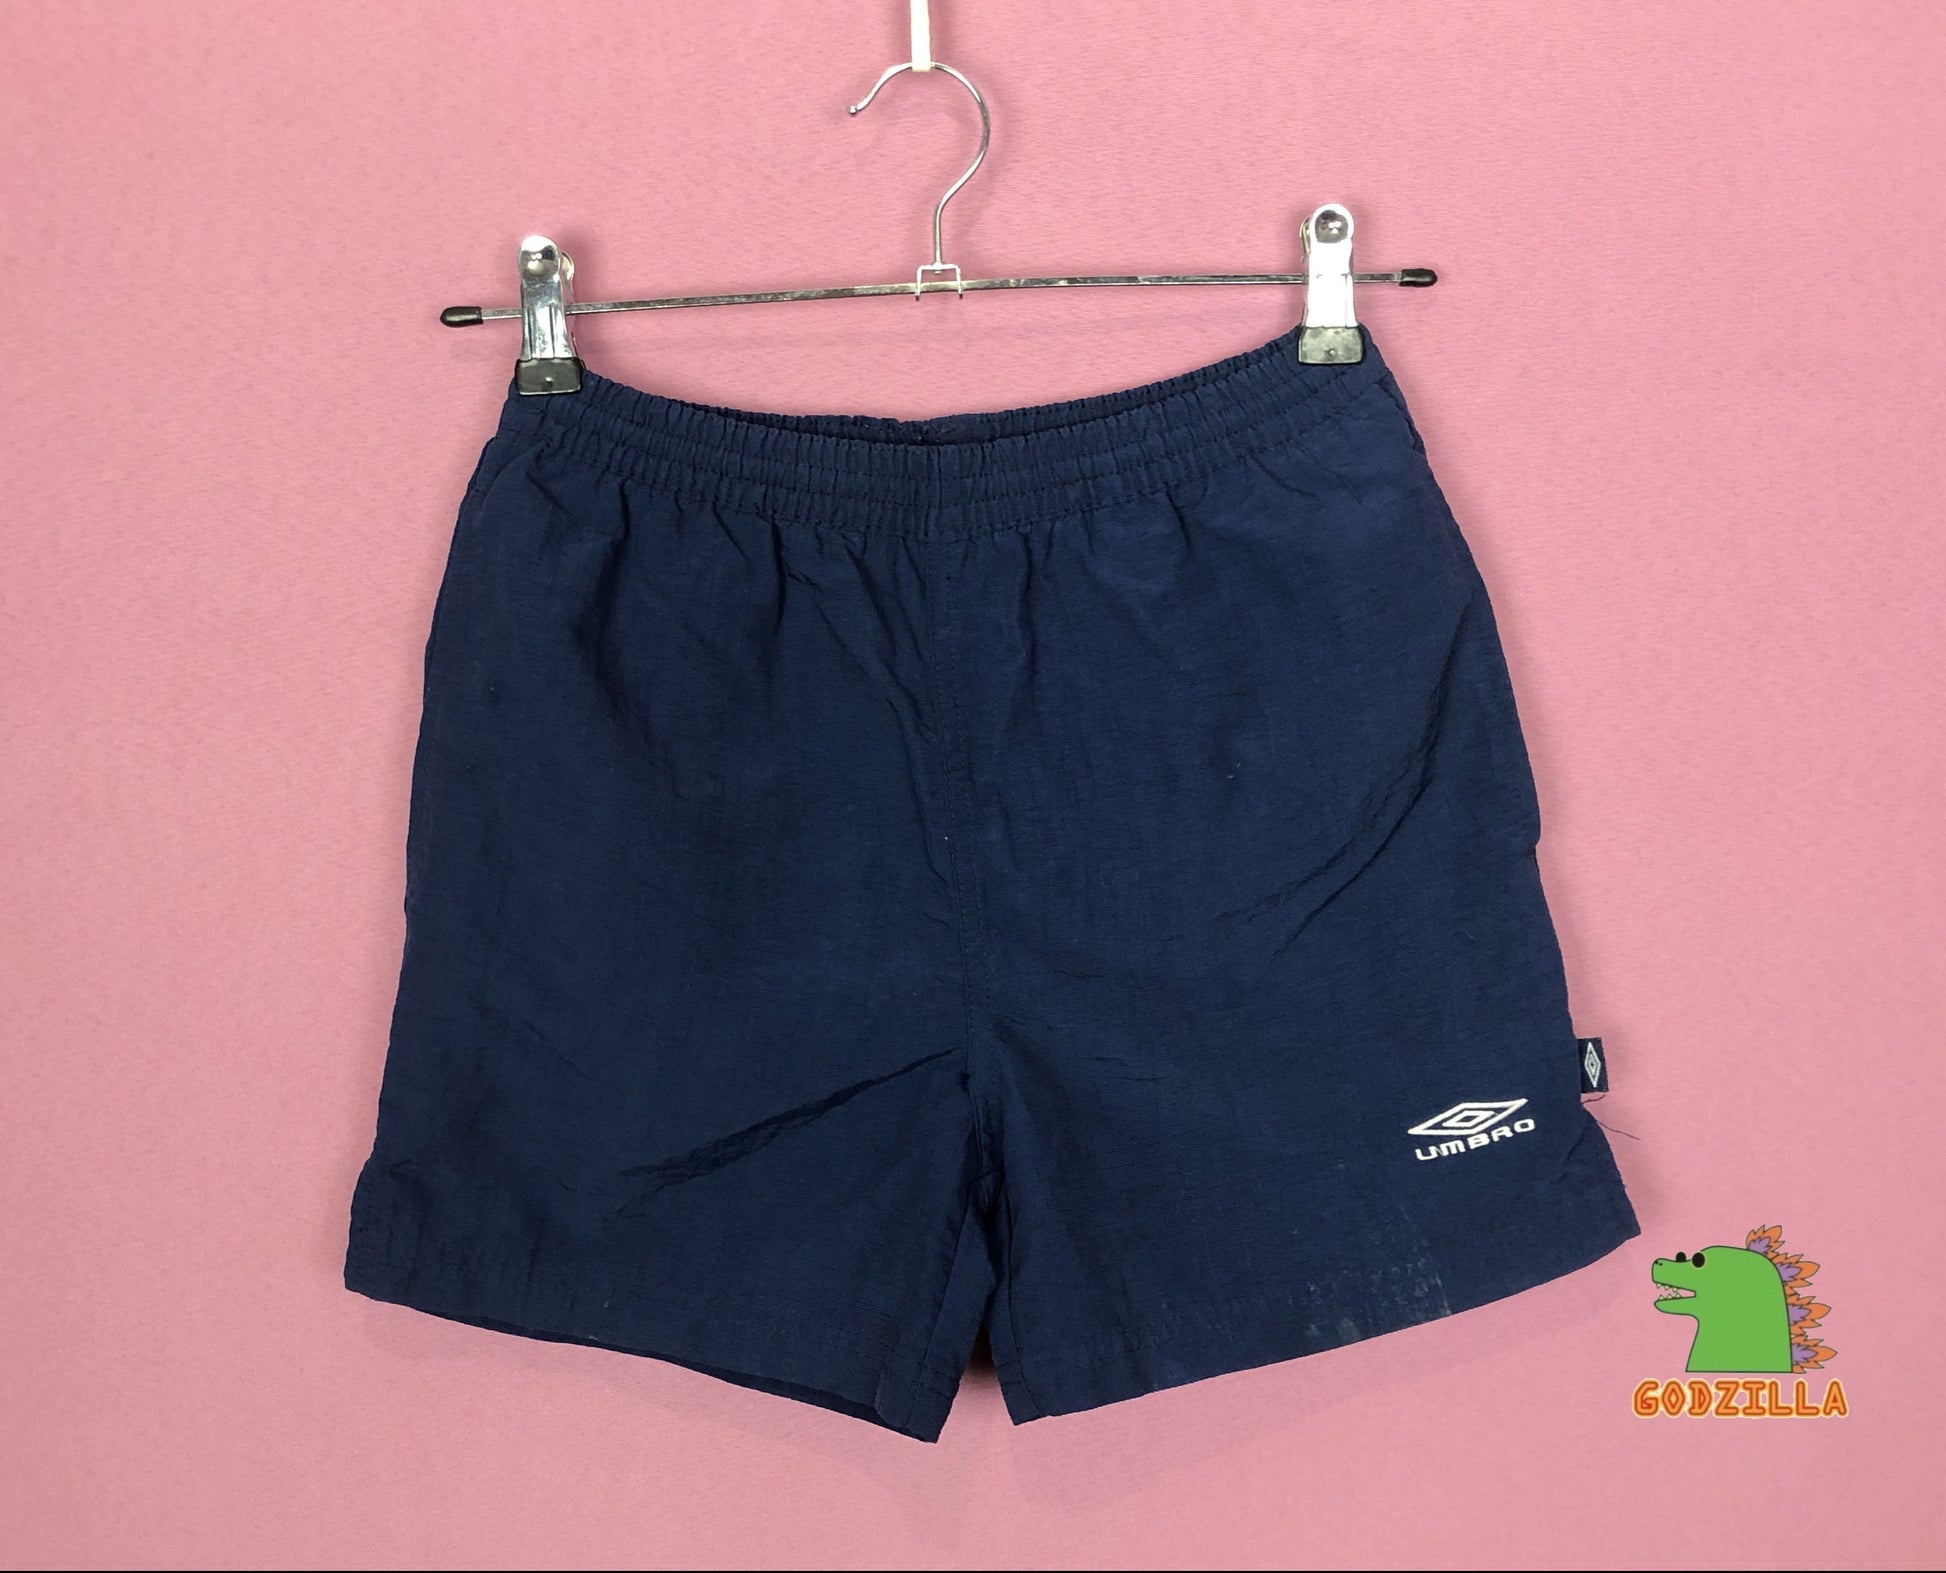 Umbro Vintage Men's Kids Sport Shorts - 10-12Y Navy Blue Nylon